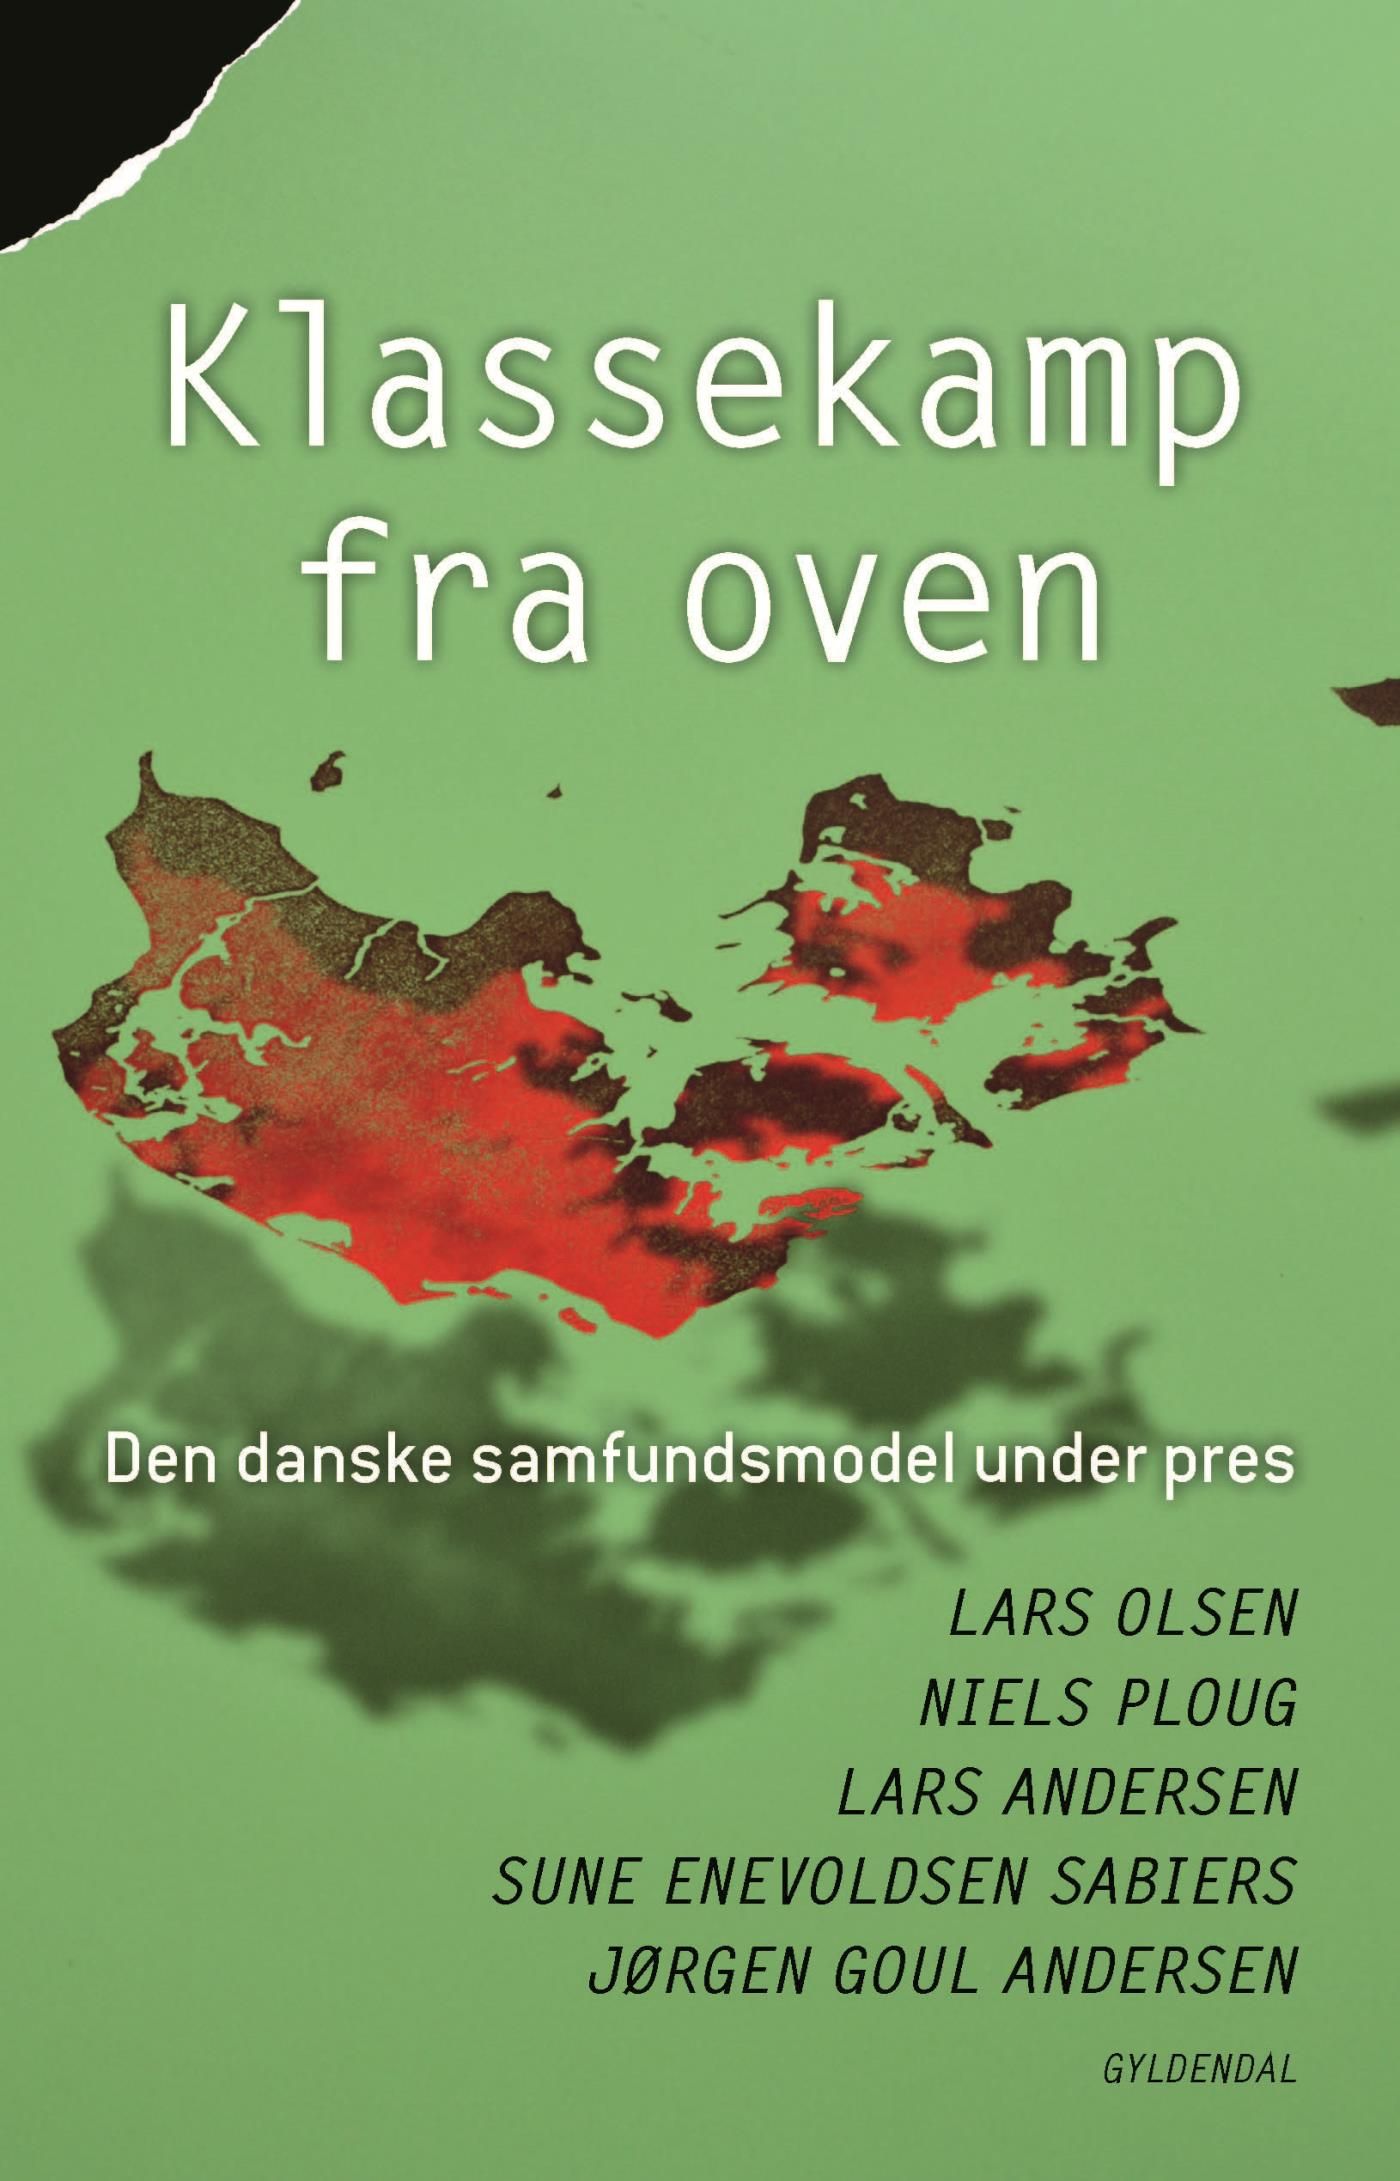 Klassekamp fra oven, e-bok av Jørgen Goul Andersen, Lars Andersen, Sune Enevoldsen Sabiers, Lars Olsen, Niels Ploug